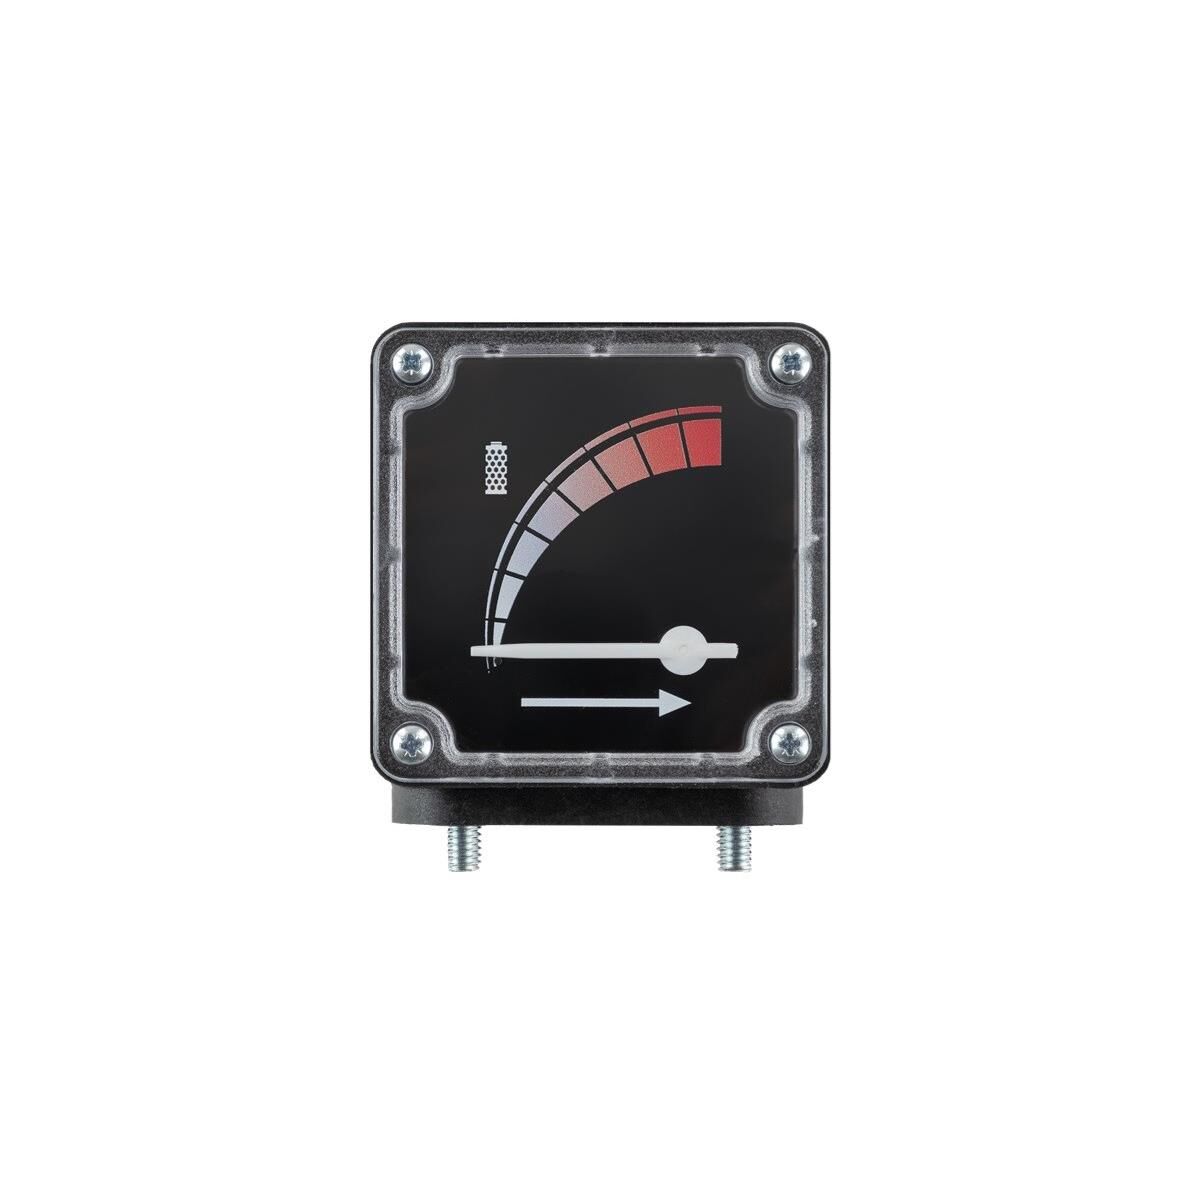 Schneider manomètre de pression différentielle DPG 42 - 2550